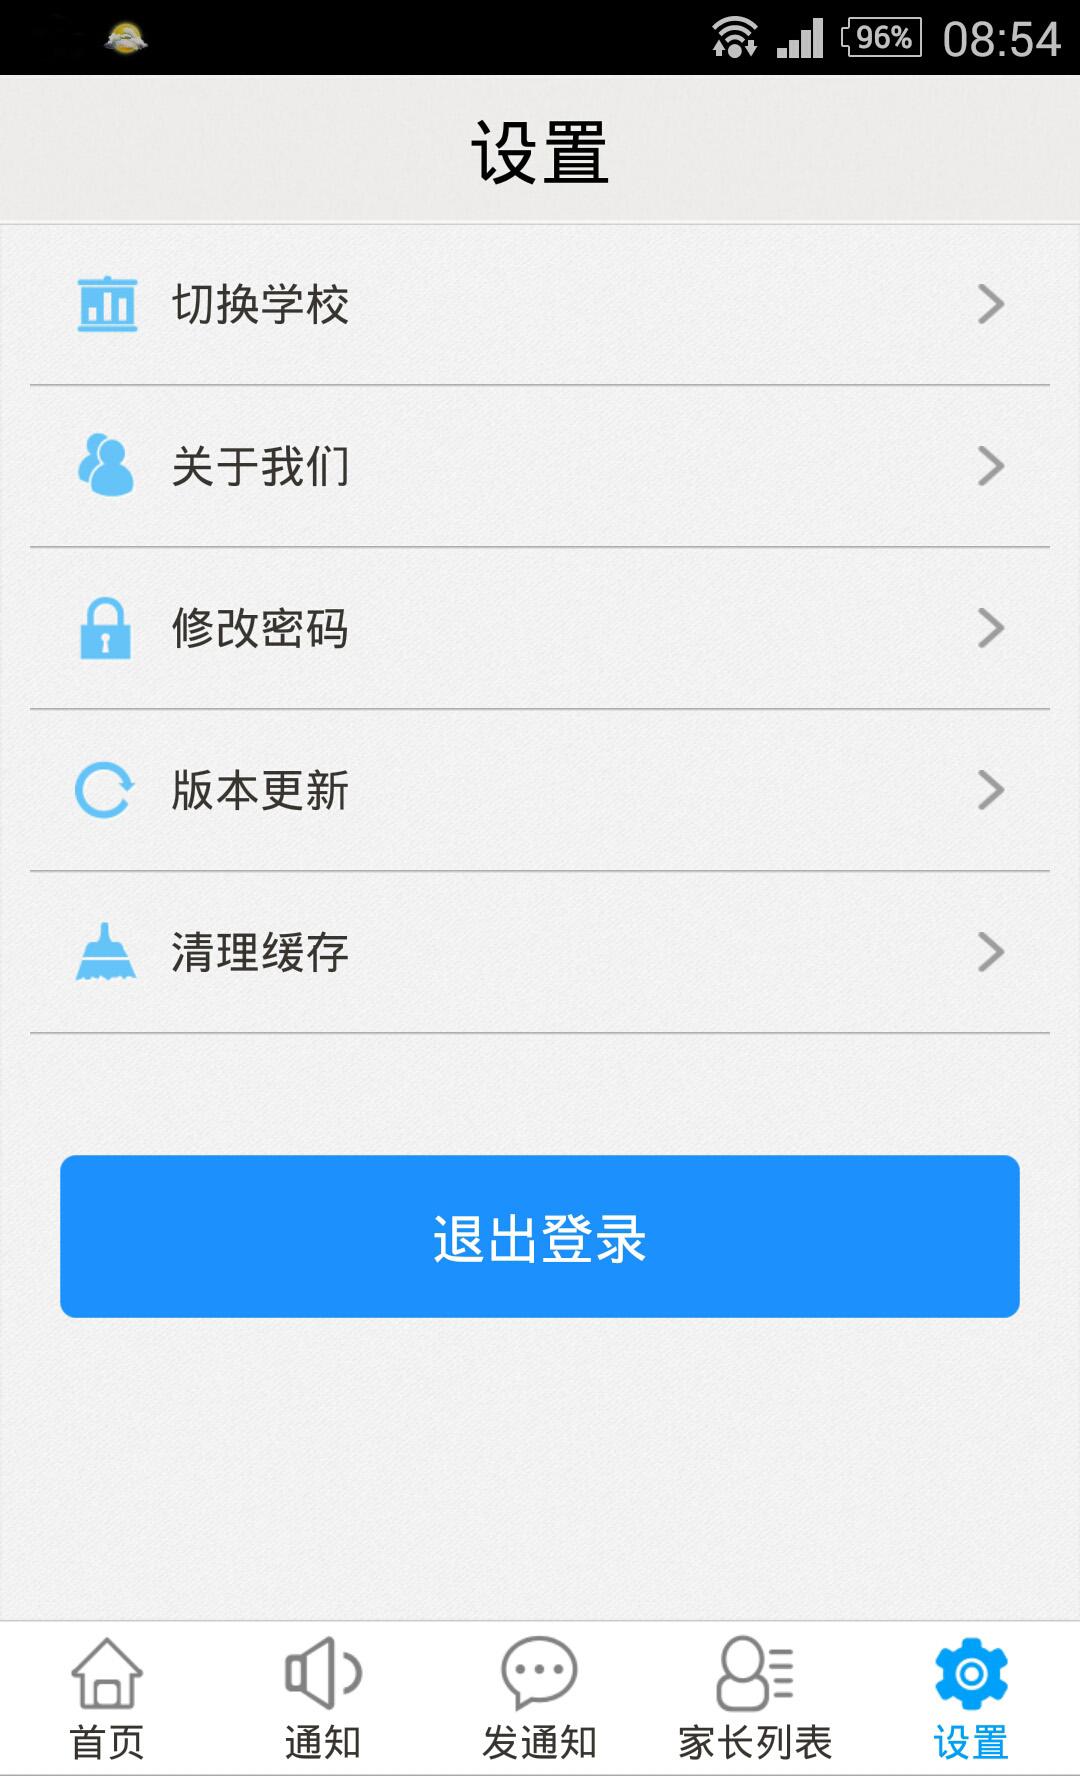 天天捷报iPhone版 v1.0 苹果手机版1